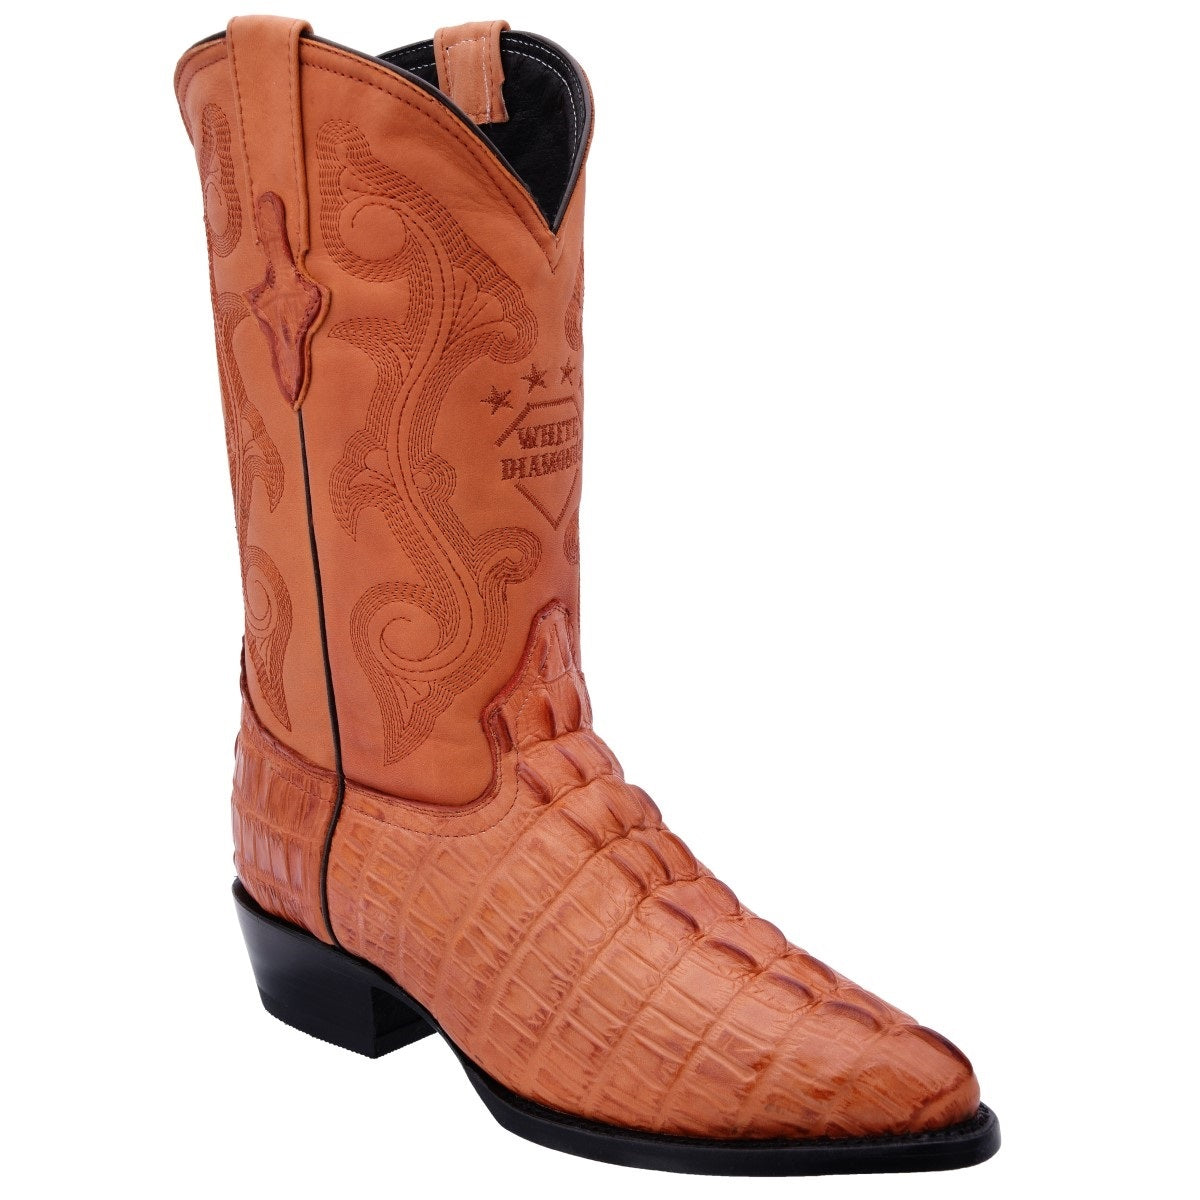 Botas Vaqueras TM-WD0275 - Western Boots